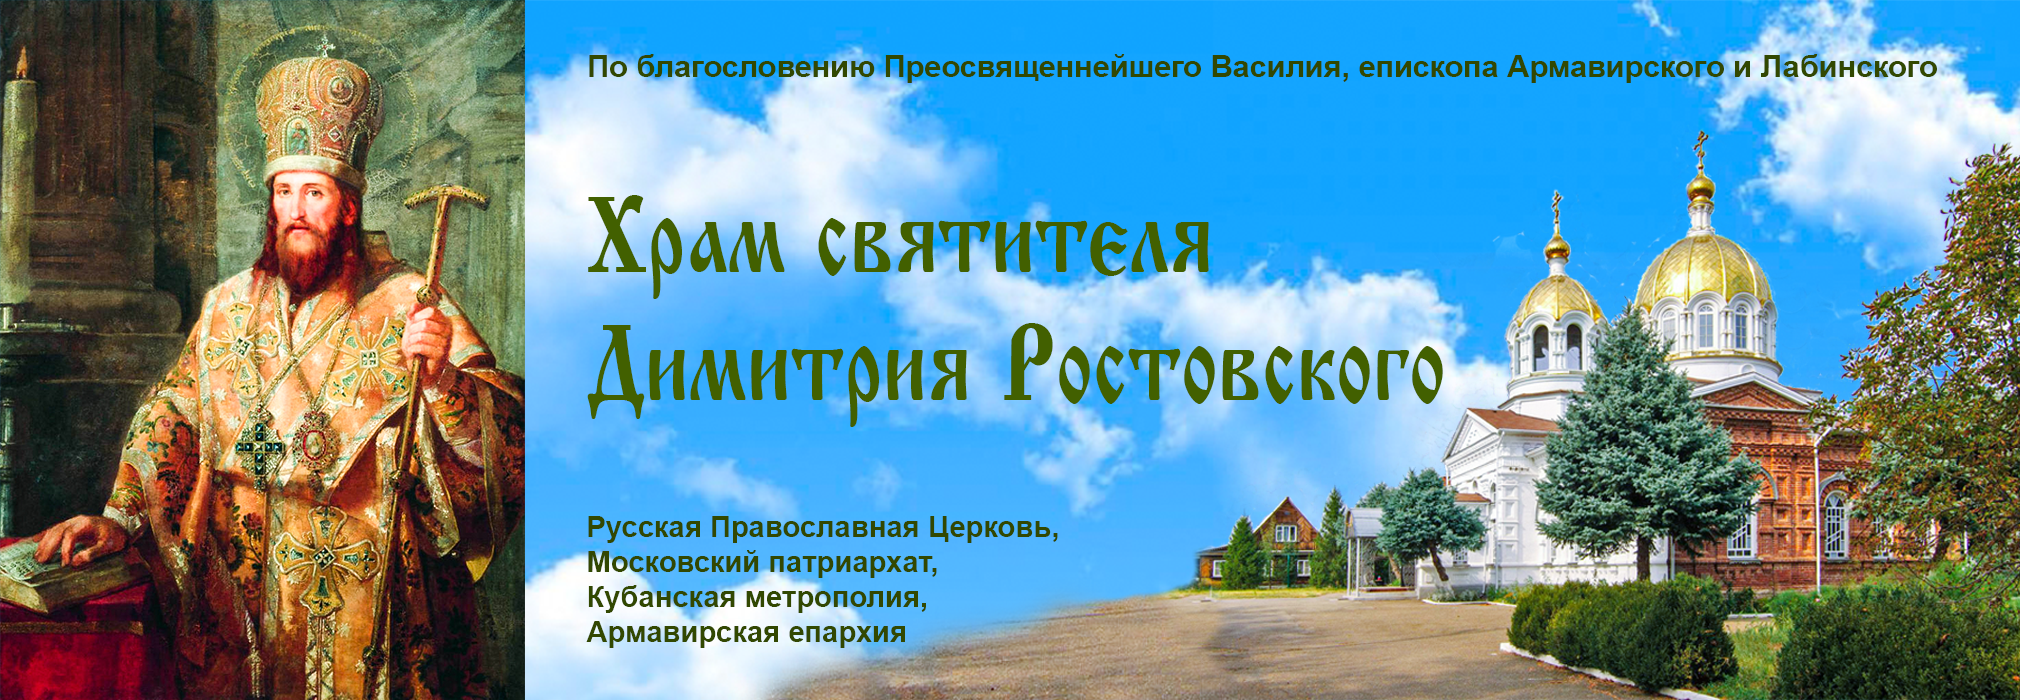 Храм святителя Димитрия Ростовского